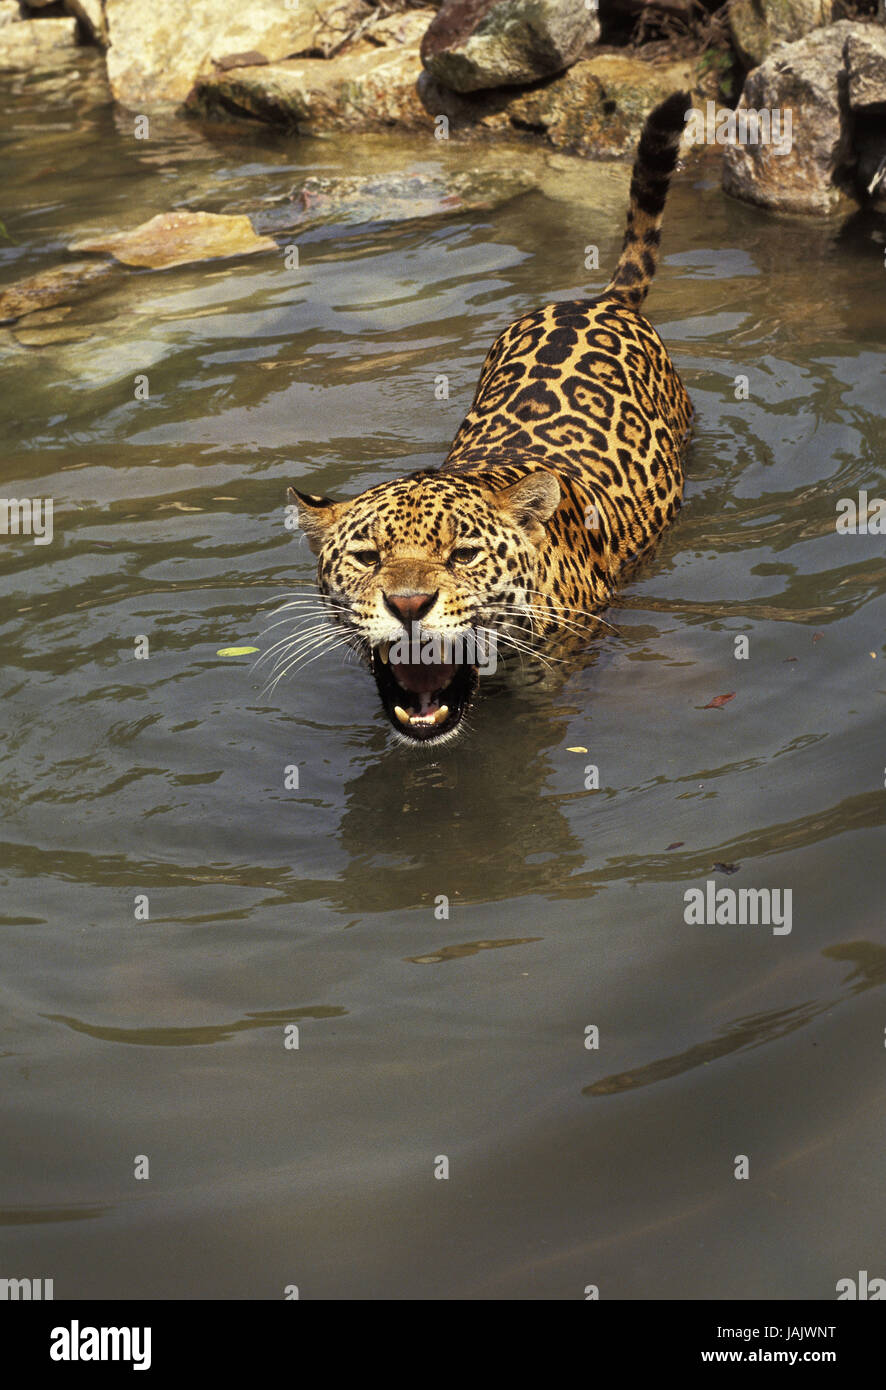 Jaguar,Panthera onca,water,hiss, Stock Photo